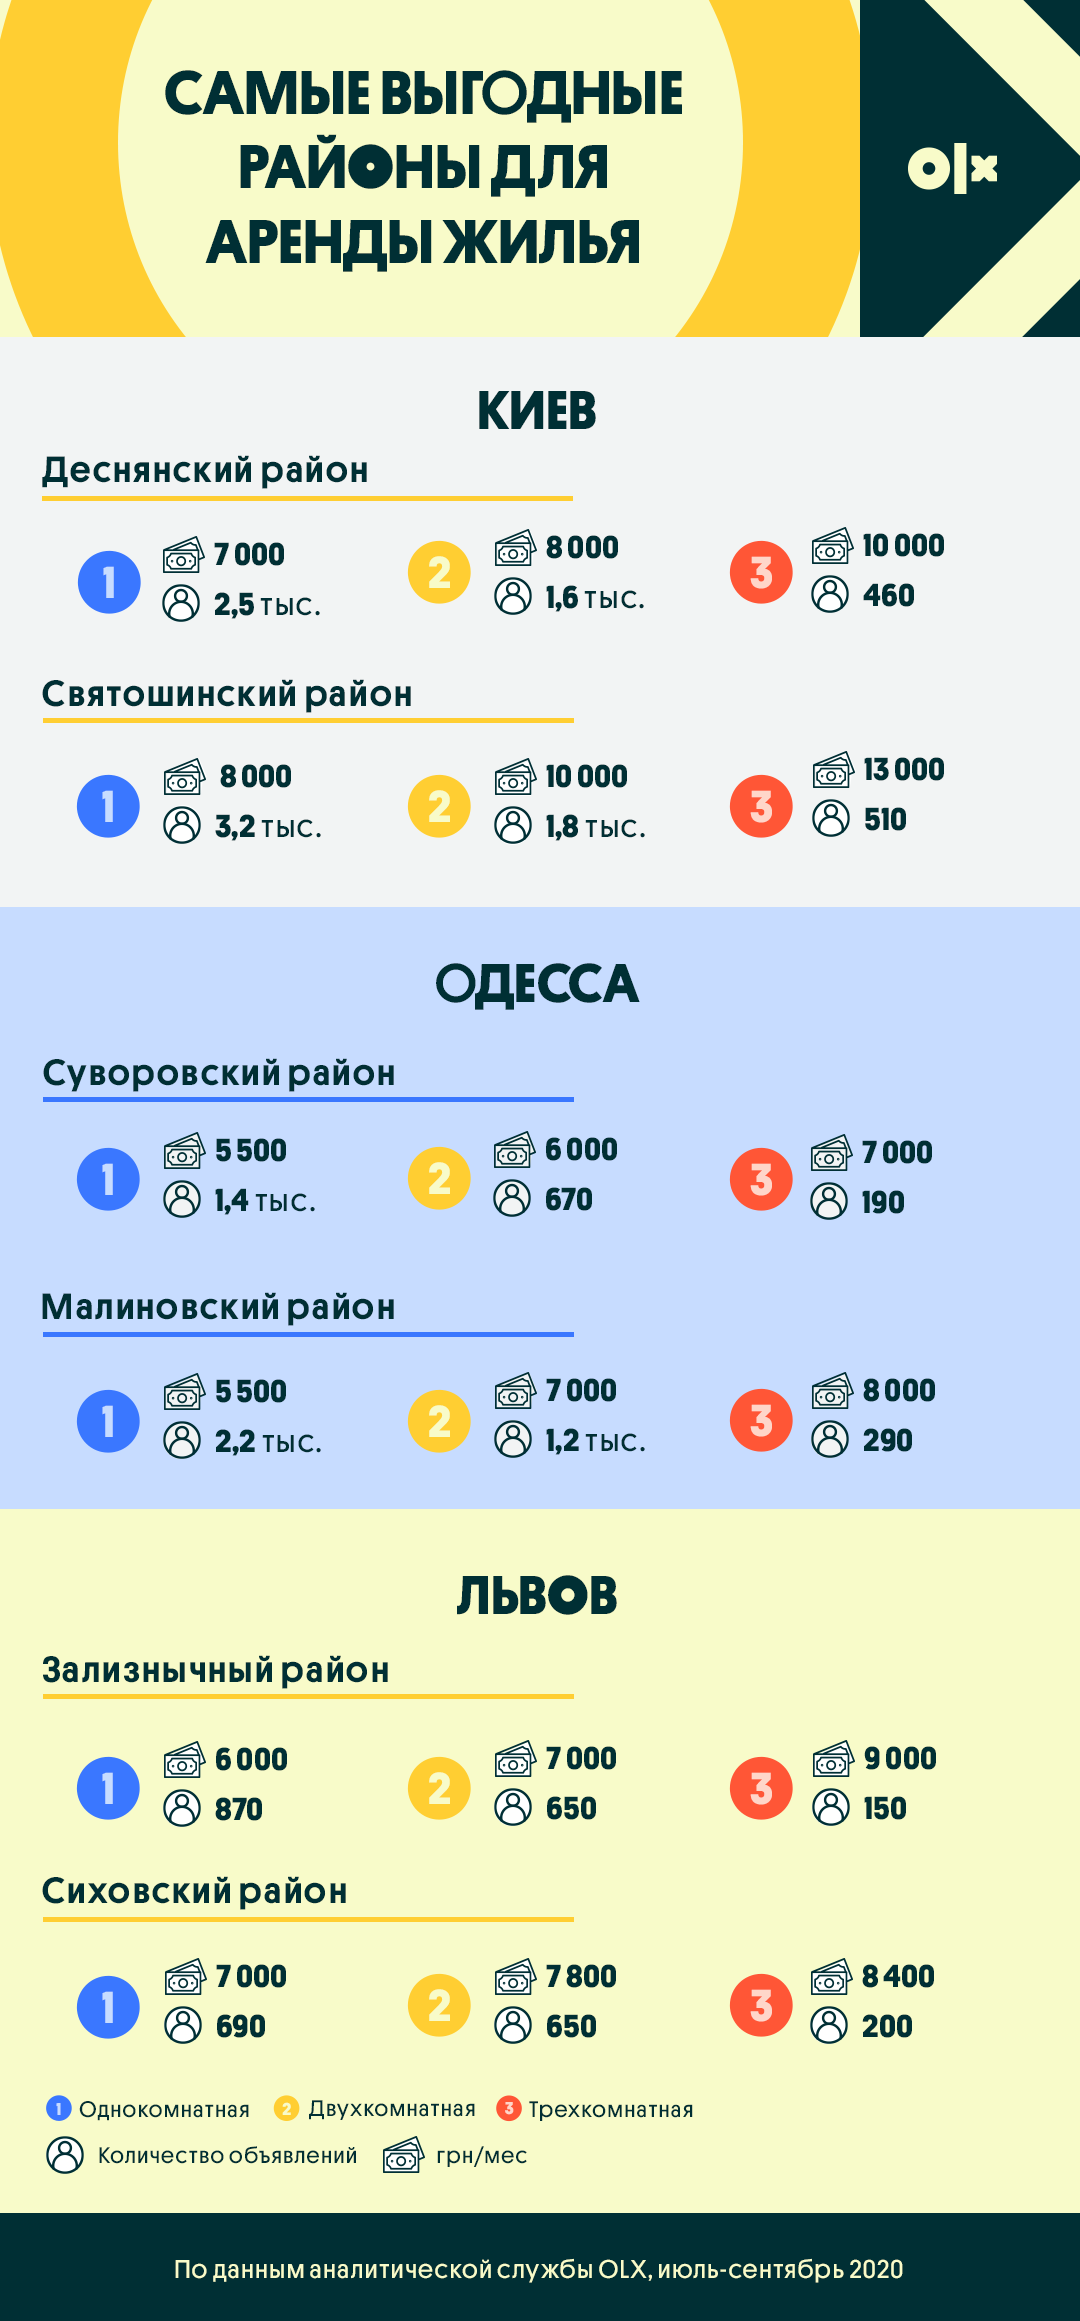 Сколько стоит аренда жилья в Киеве, Одессе и Львове: аналитика OLX